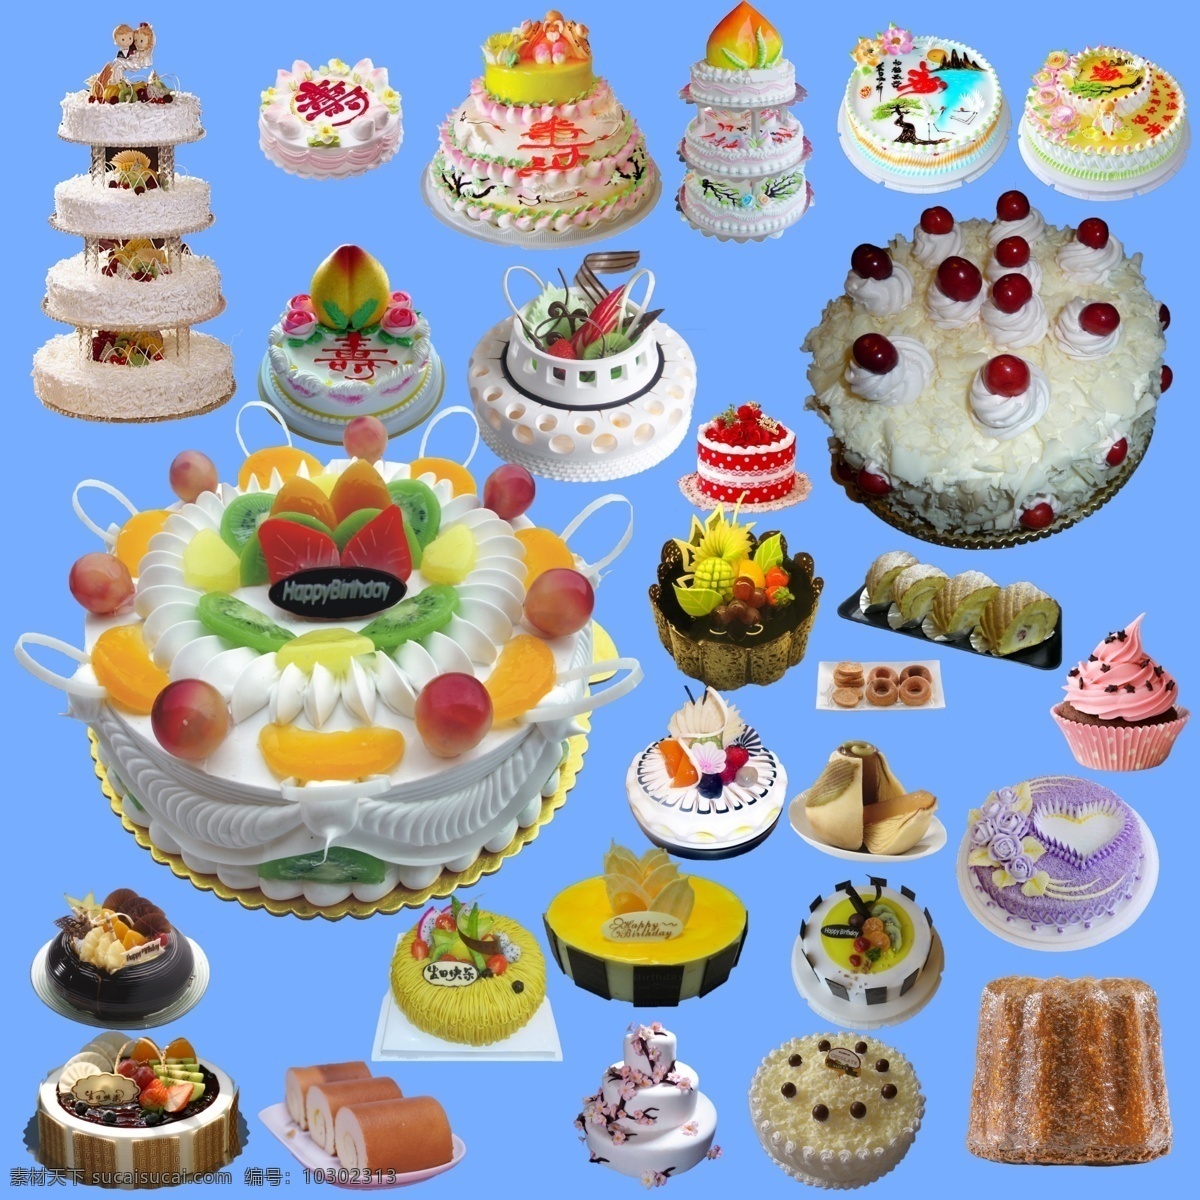 各种蛋糕 蛋糕 果味蛋糕 水果蛋糕 欧式蛋糕 多层蛋糕 巧克力蛋糕 花式蛋糕 爱心蛋糕 生日蛋糕 分层